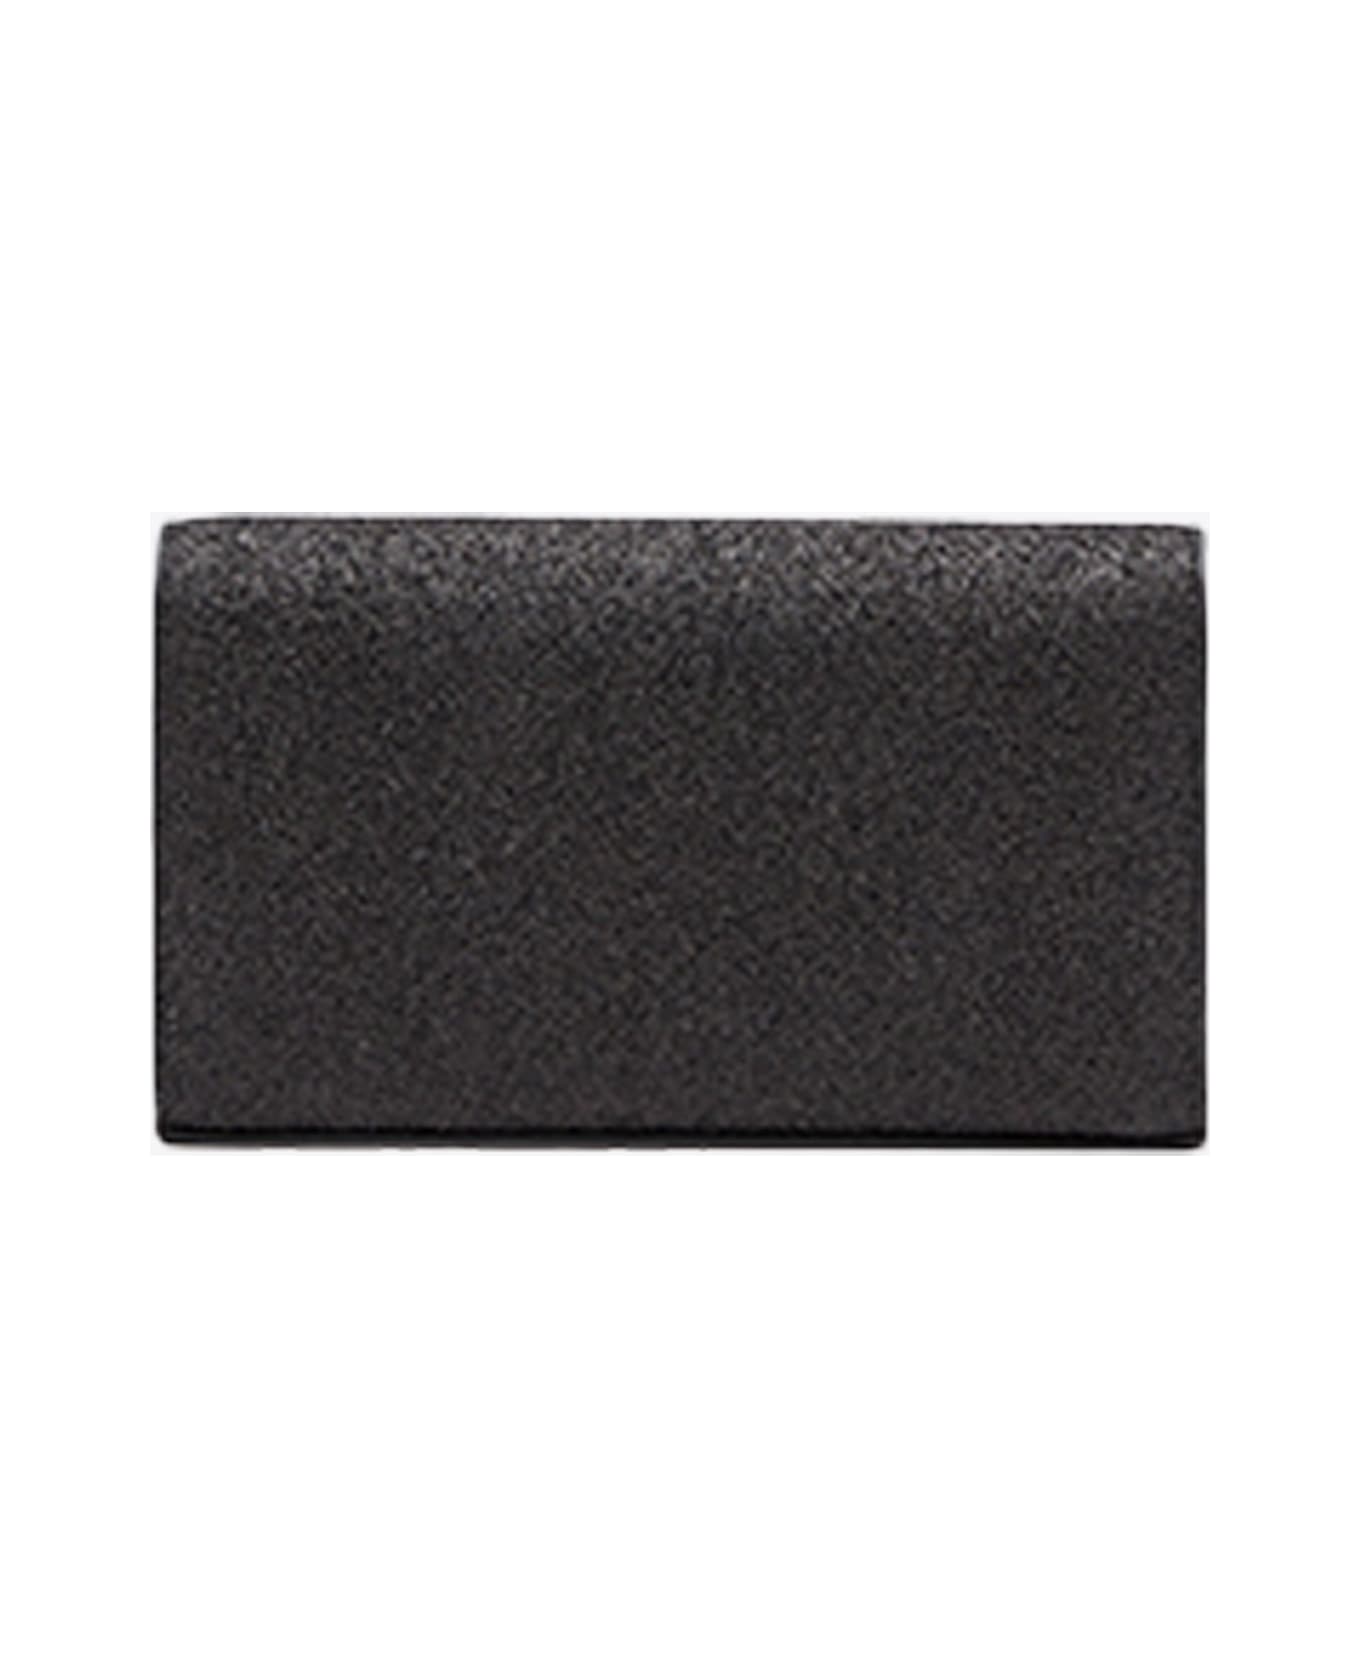 Diesel 1dr 1dr Wallet Strap Sparkly Black Purse With Shoulder Strap - 1dr Wallet Strap - black